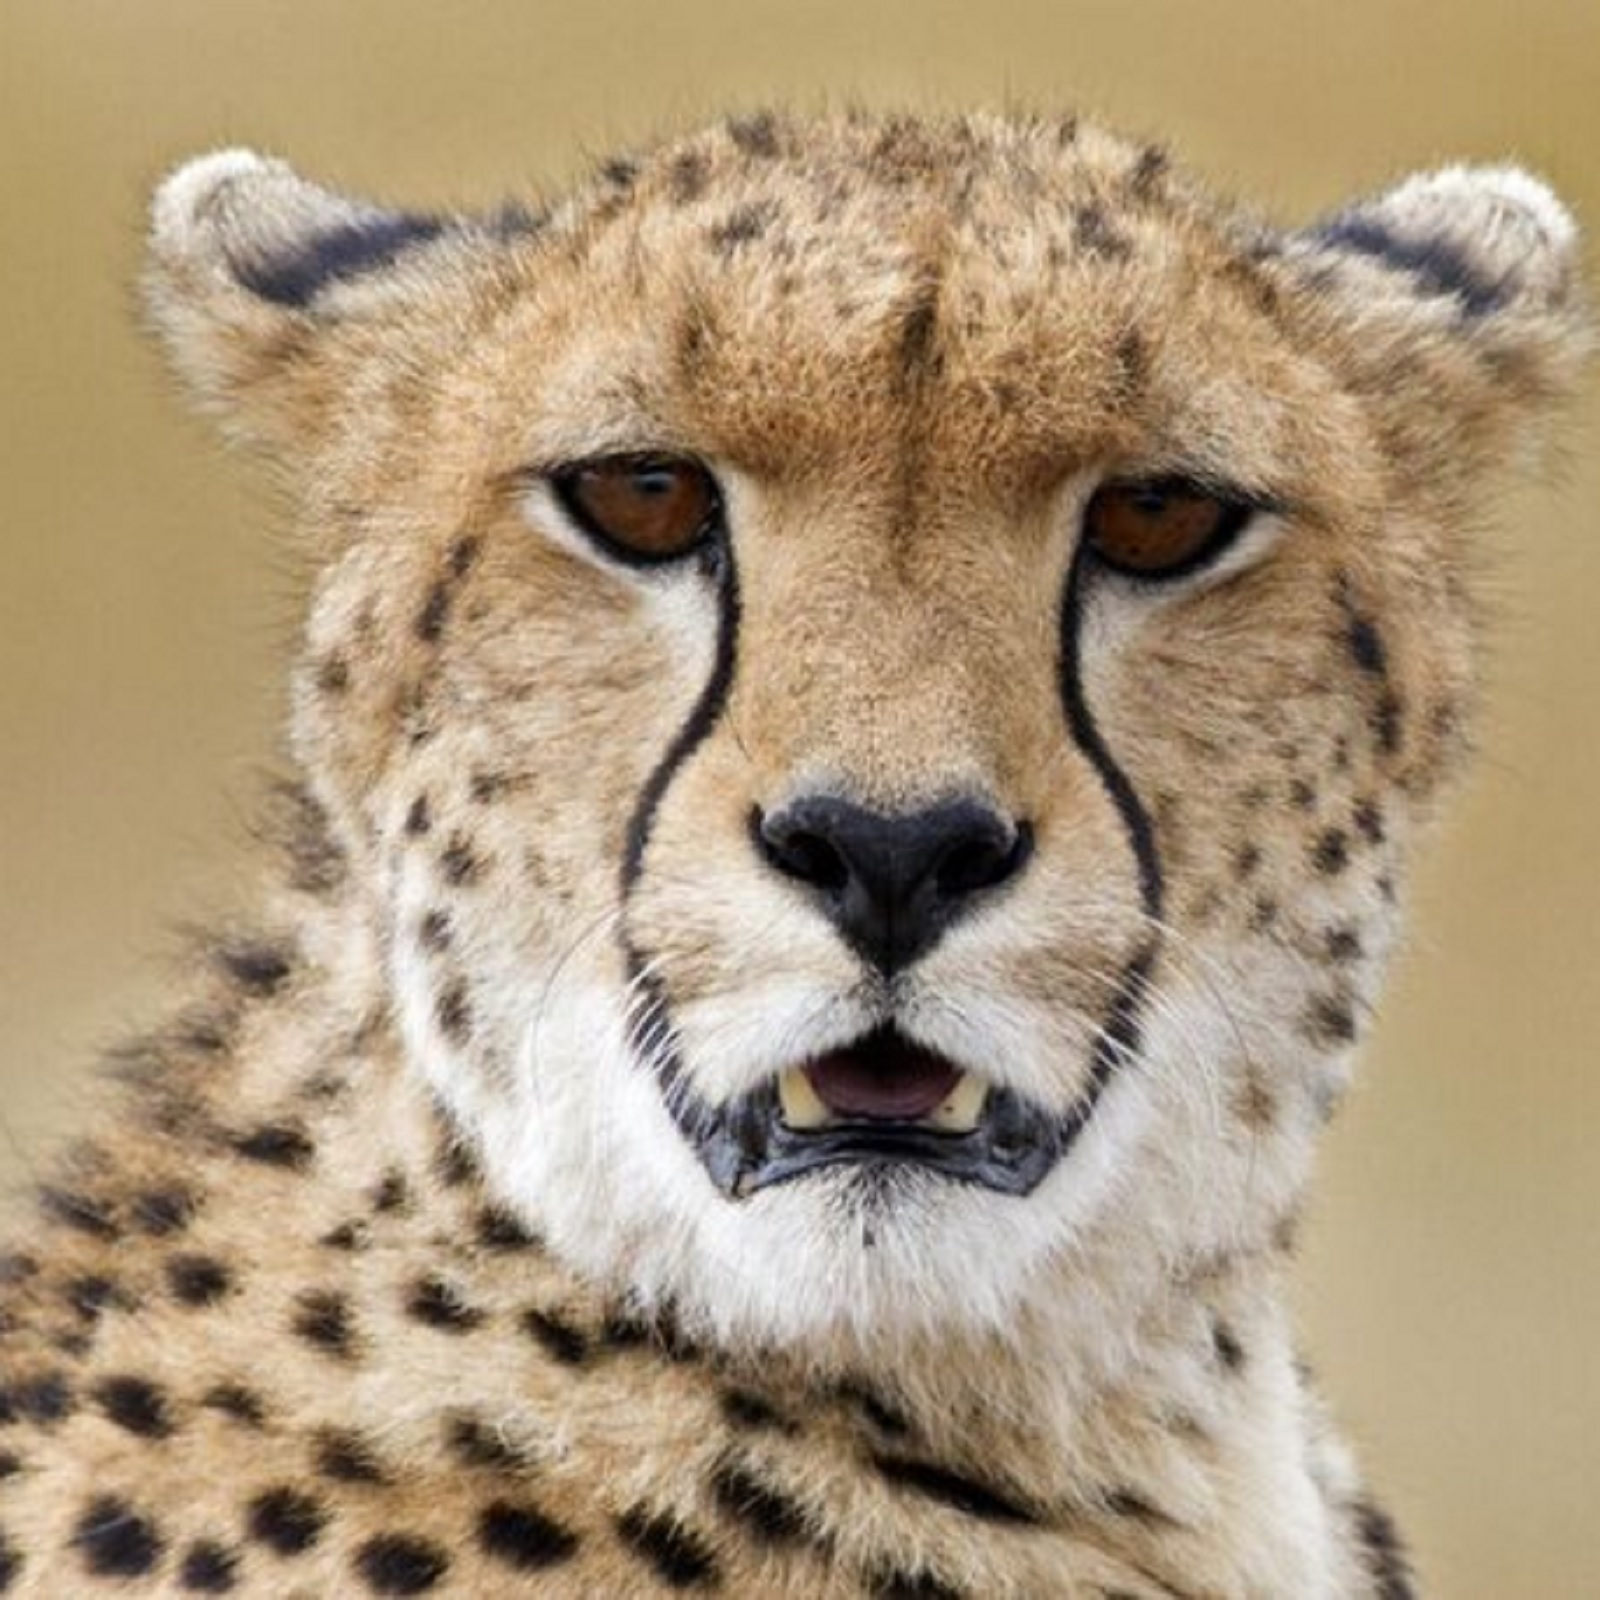 Cheetah move will be seen again in the jungles of india namibia ready to send 35 40 cheetahs - Cheetah in India: भारत के जंगलों में फिर दिखेगी चीते की चाल, नामीबिया